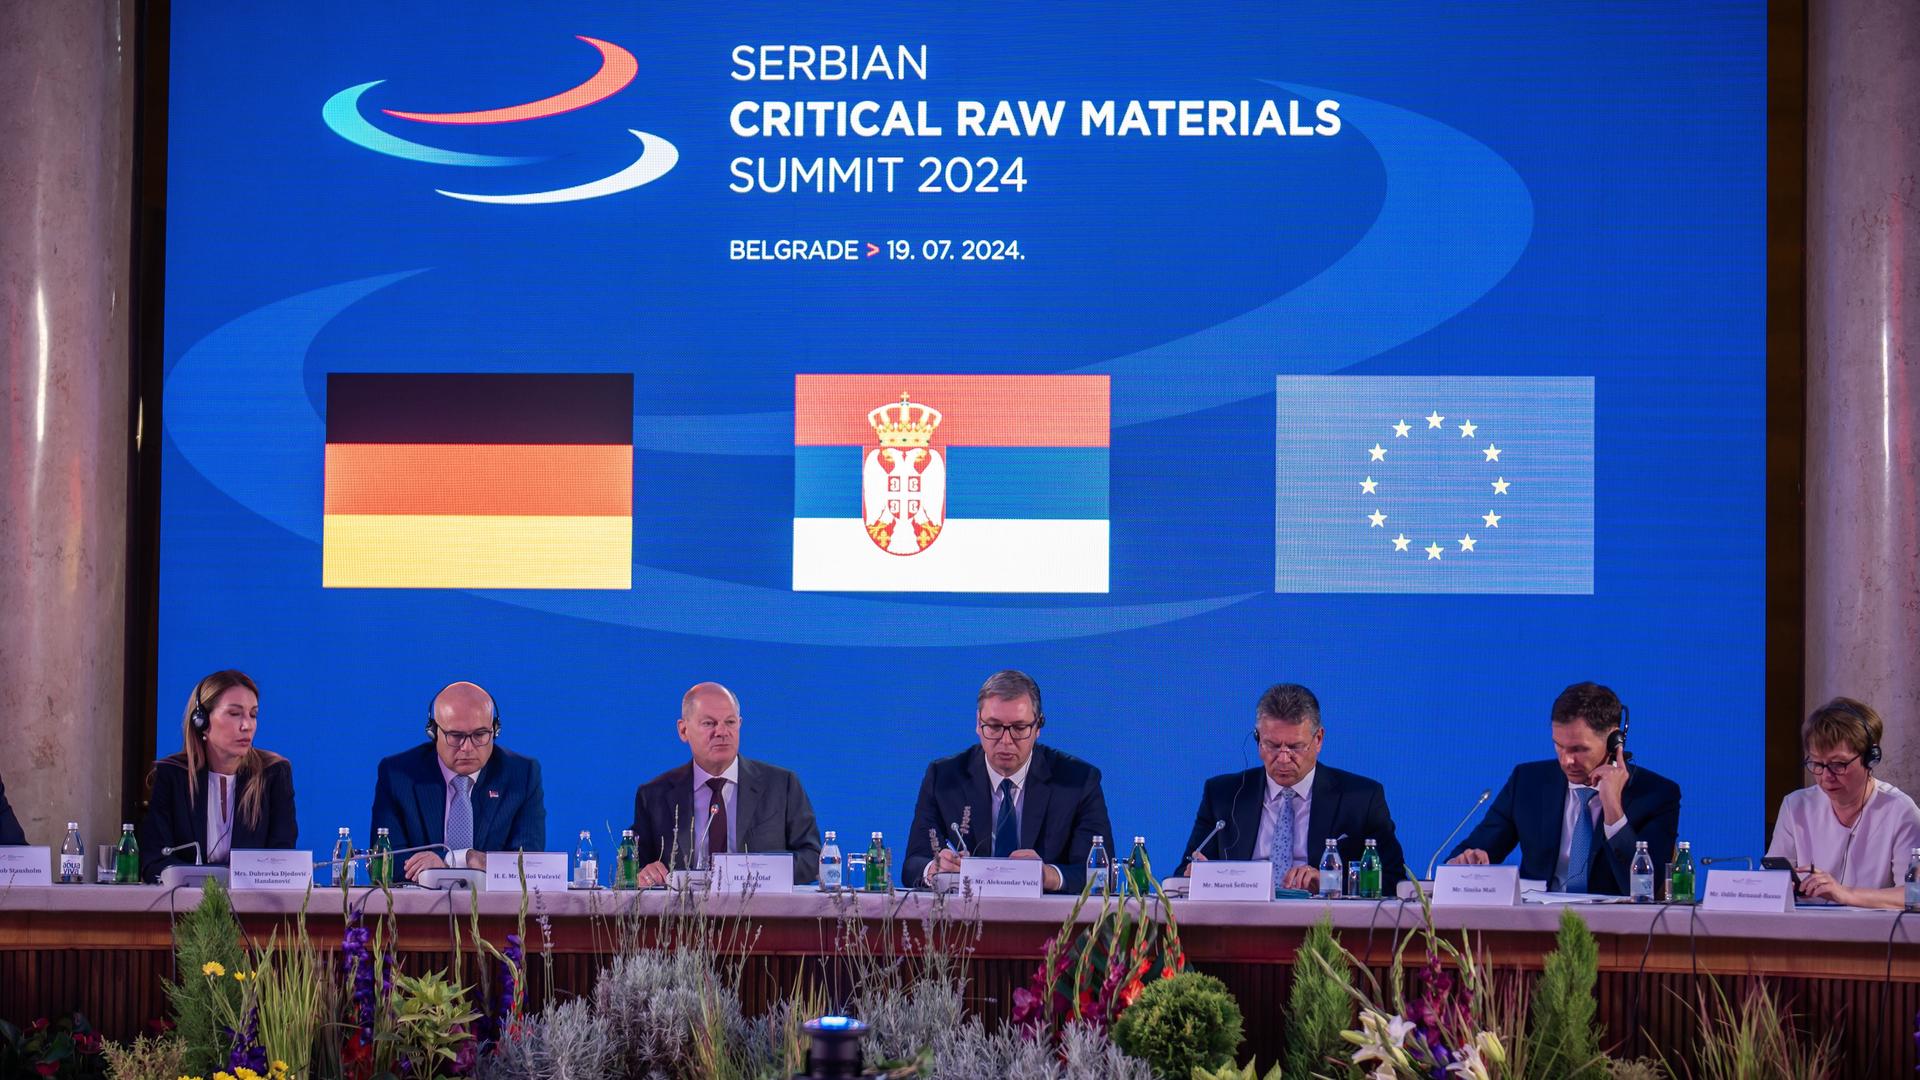 Bundeskanzler Olaf Scholz (3.vl,SPD), spricht neben Aleksandar Vucic, Präsident von Serbien bei einem Gipfeltreffen zu kritischen Rohstoffen.